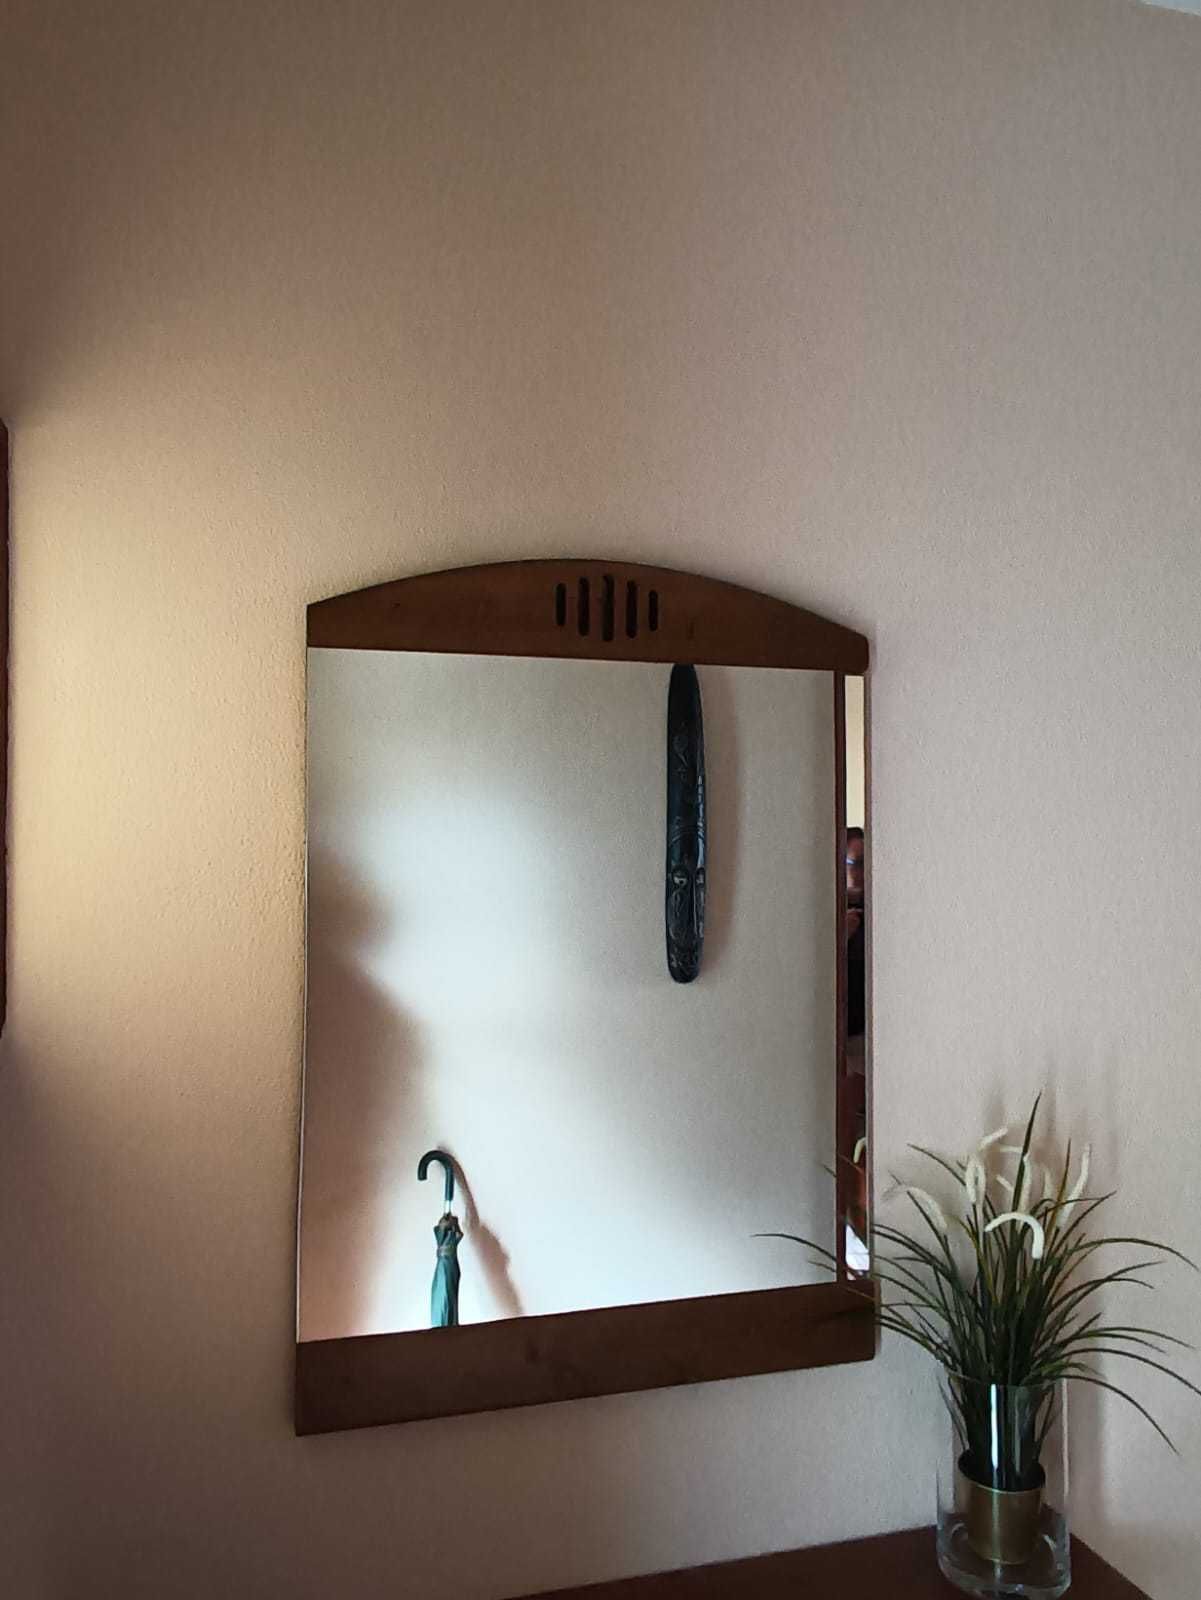 Espelho lindo com rebordo em madeira.